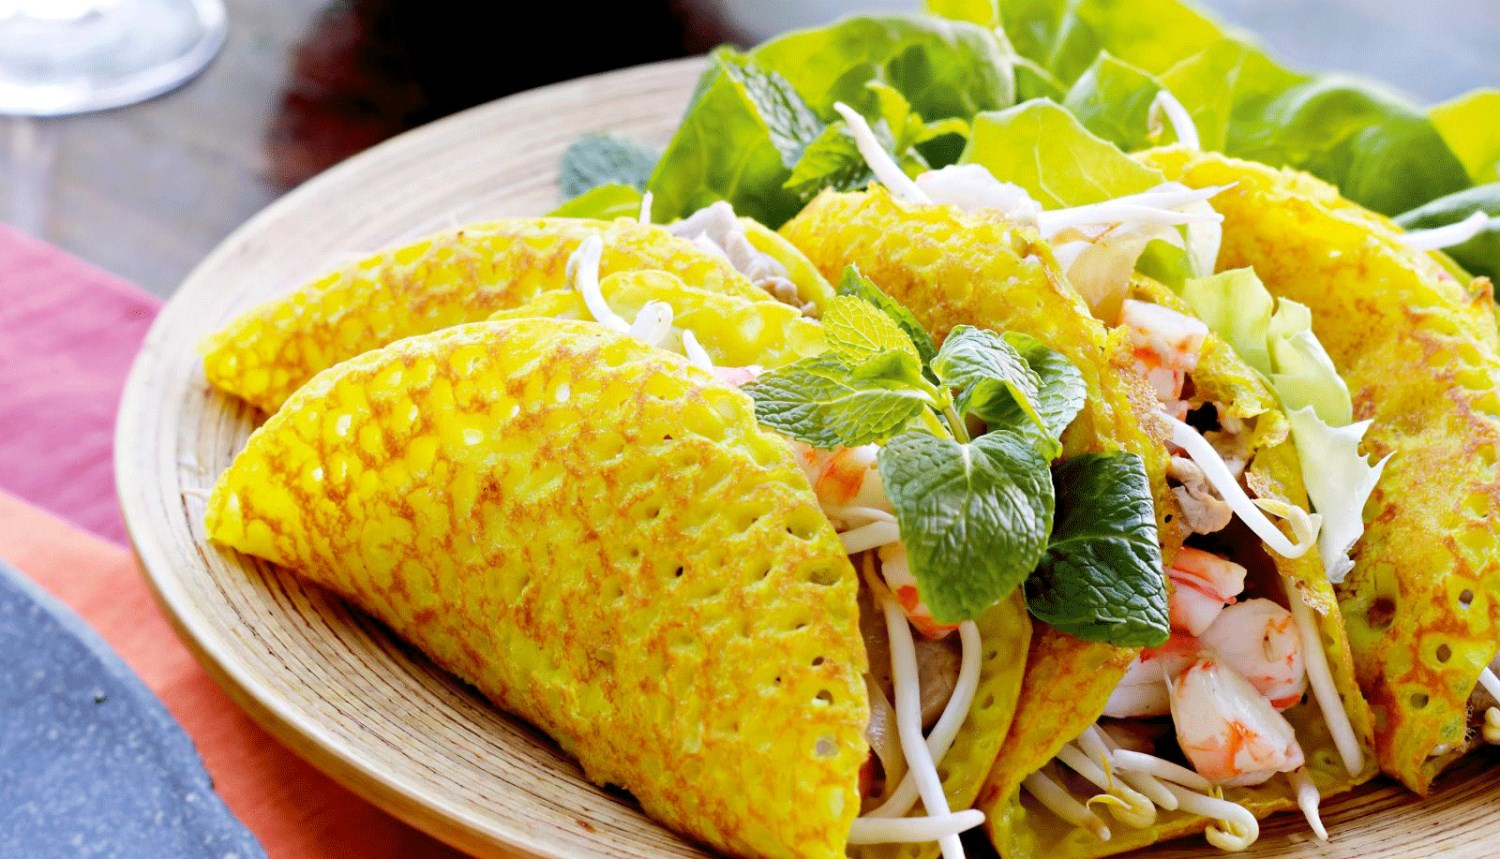 Bánh Xèo Rau Rừng - Lý Thường Kiệt ở Quận Gò Vấp, TP. HCM | Foody.vn